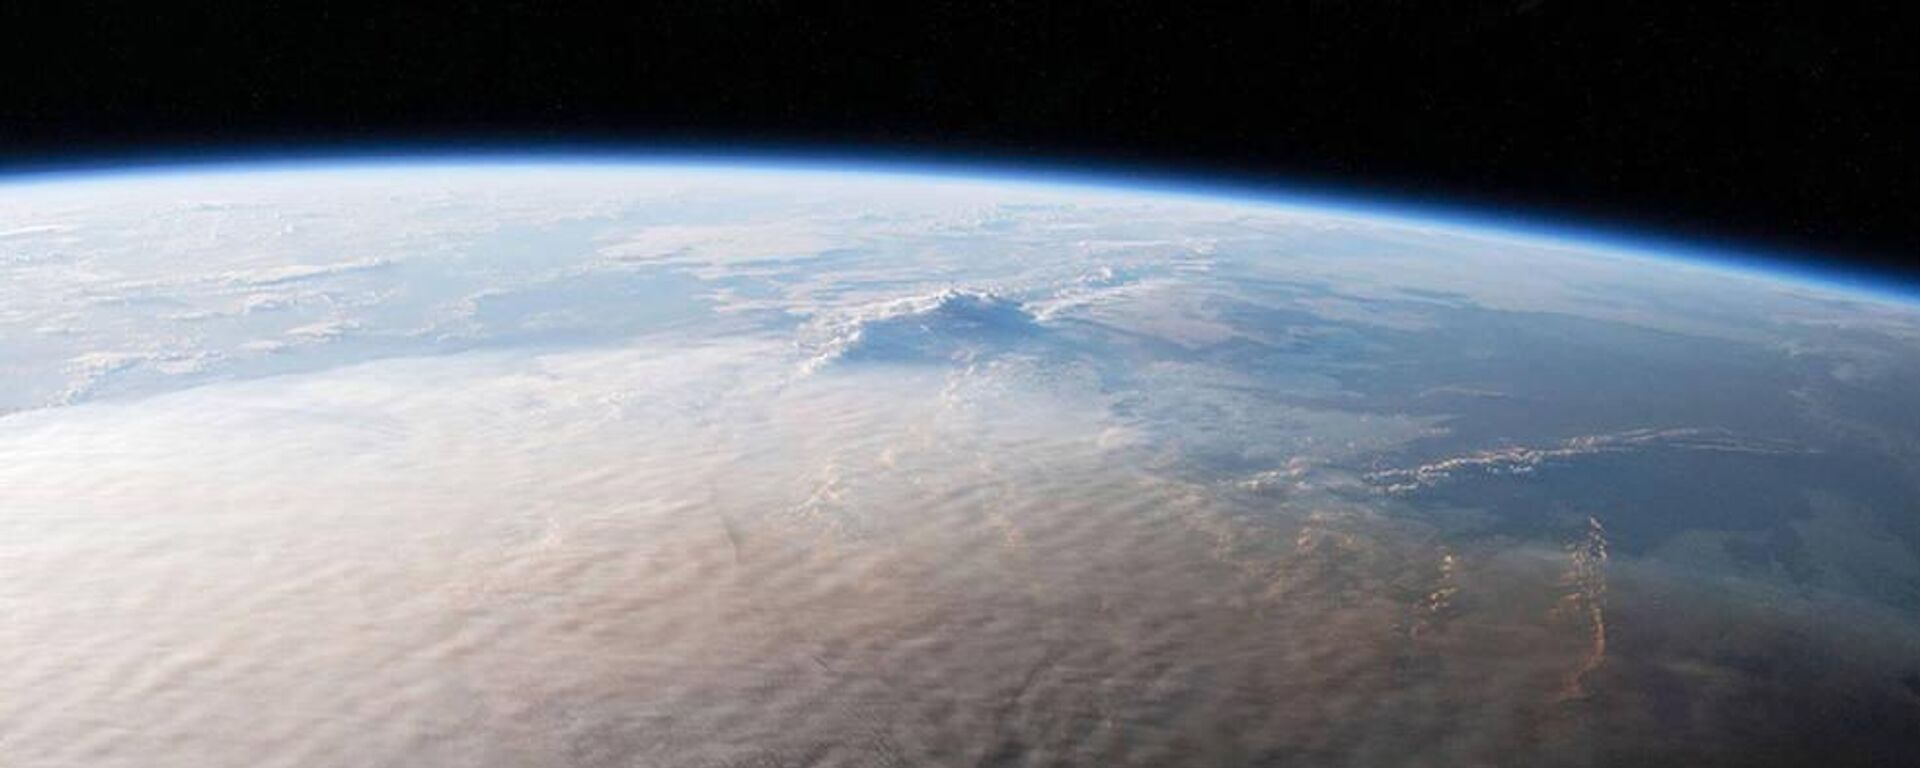 Remanentes de la erupción del volcán Tonga captados desde el espacio. - Sputnik Mundo, 1920, 05.08.2022